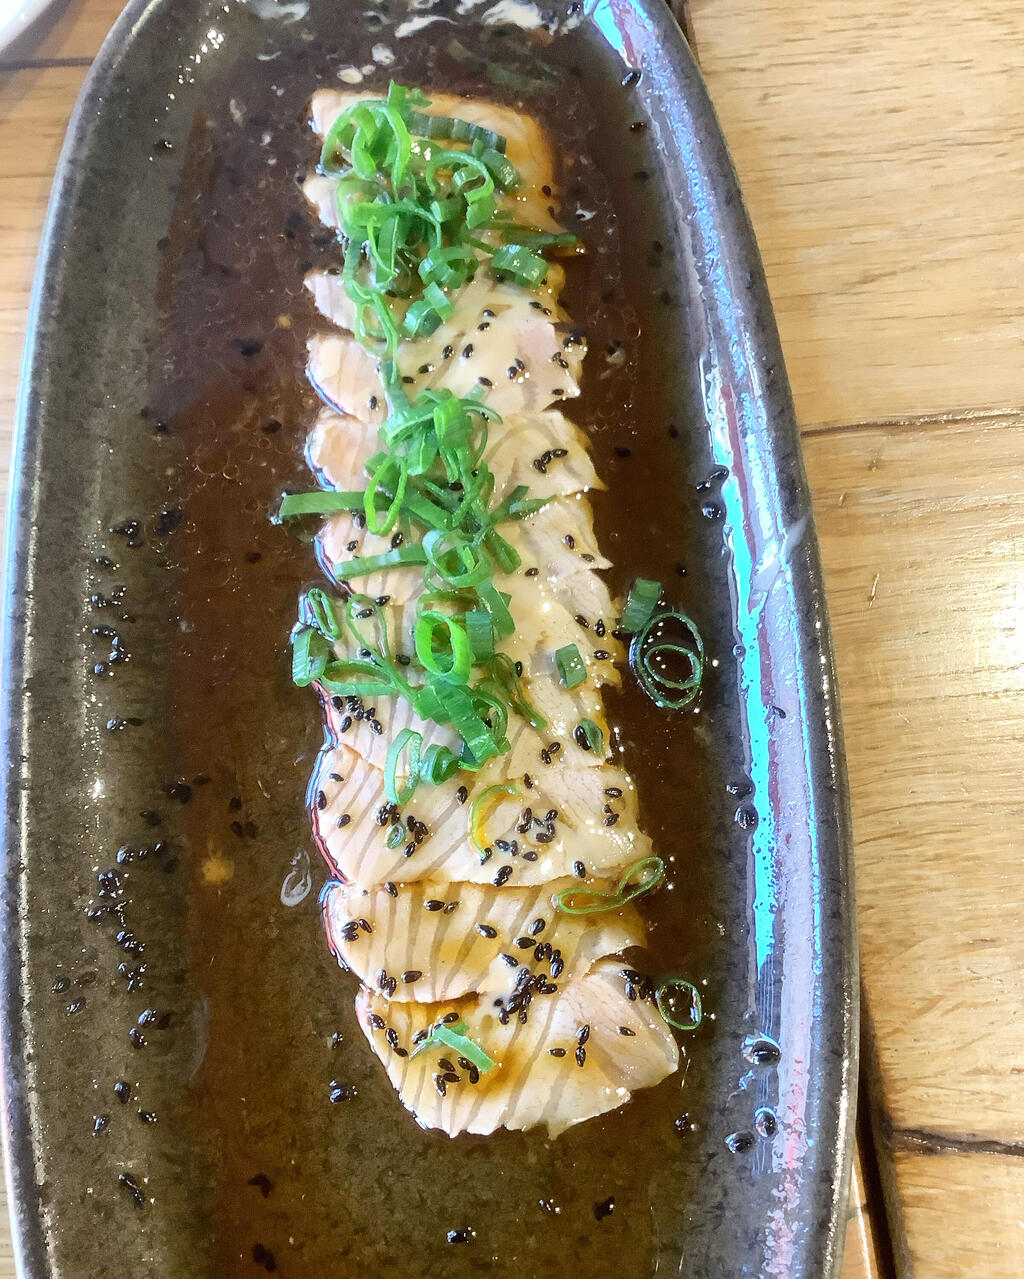 Pescado's hot sashimi